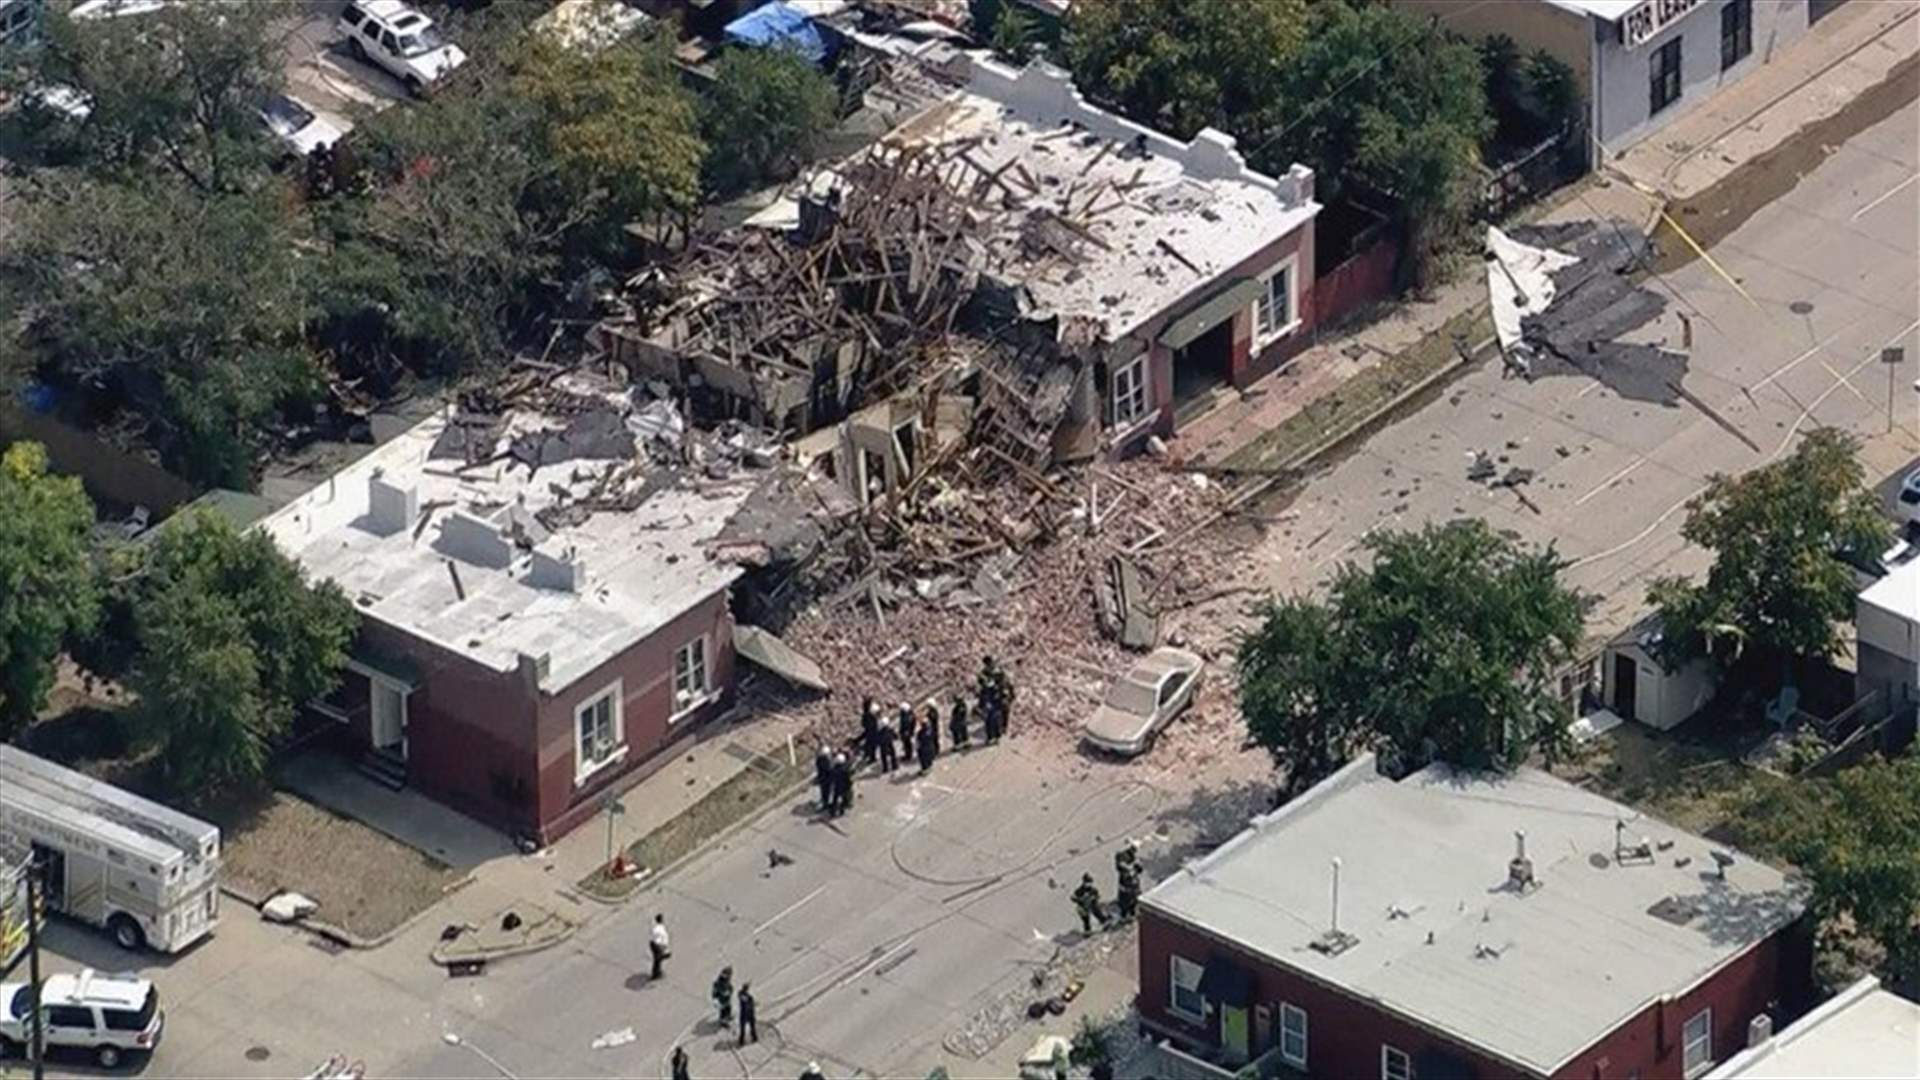 انفجار غاز طبيعي يدمر مبنى سكنيا بمدينة دنفر الأميركية